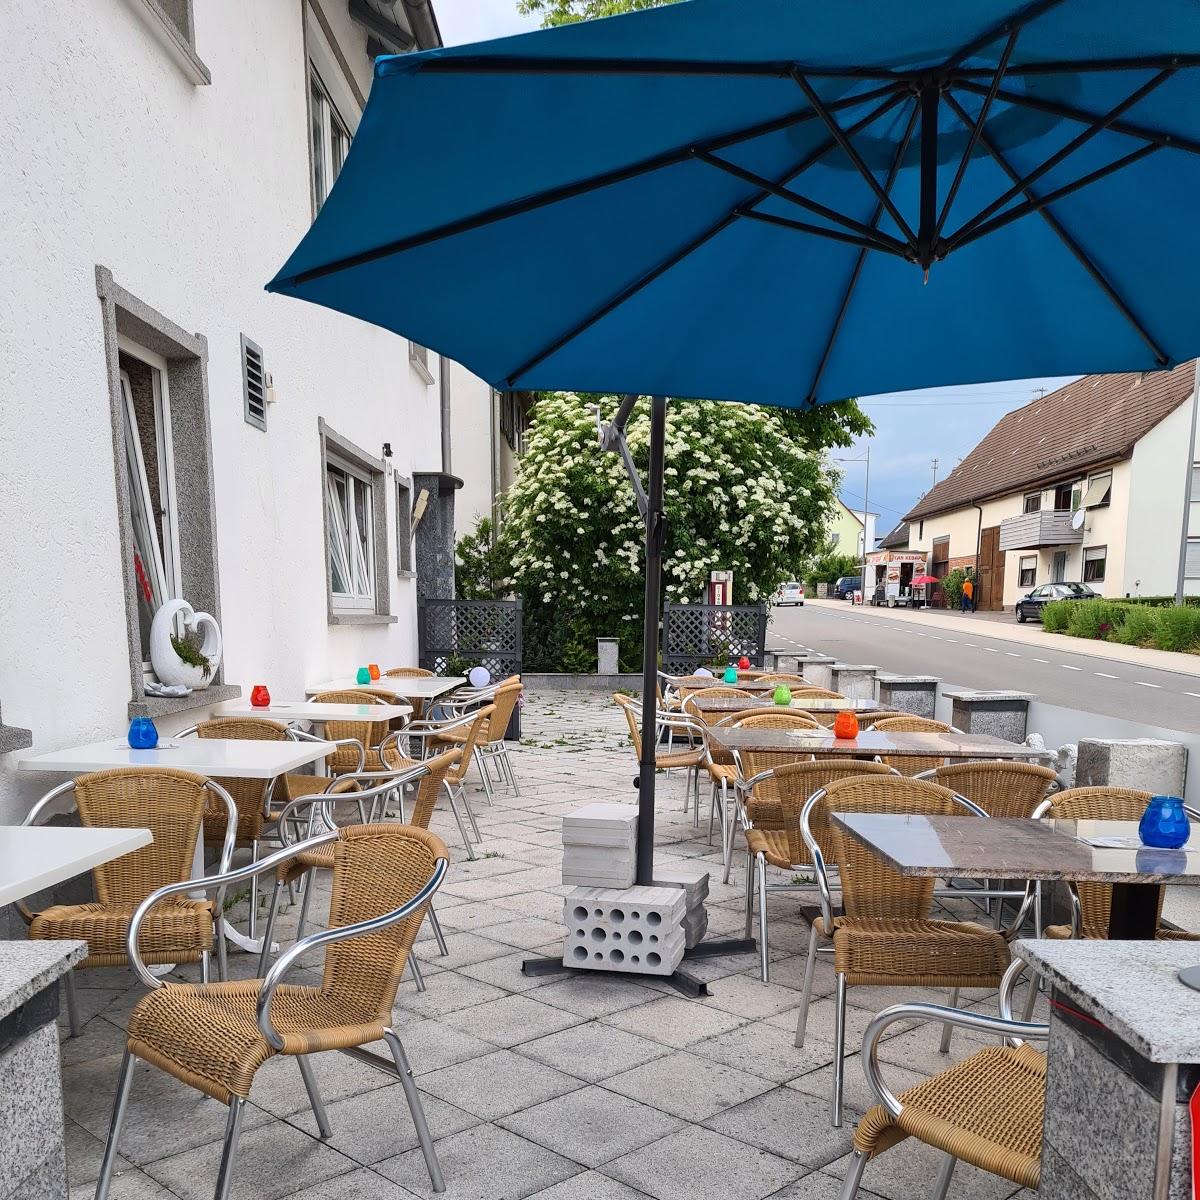 Restaurant "Best Kebap & Pizza - Traditionell und Lecker" in Neuhausen ob Eck